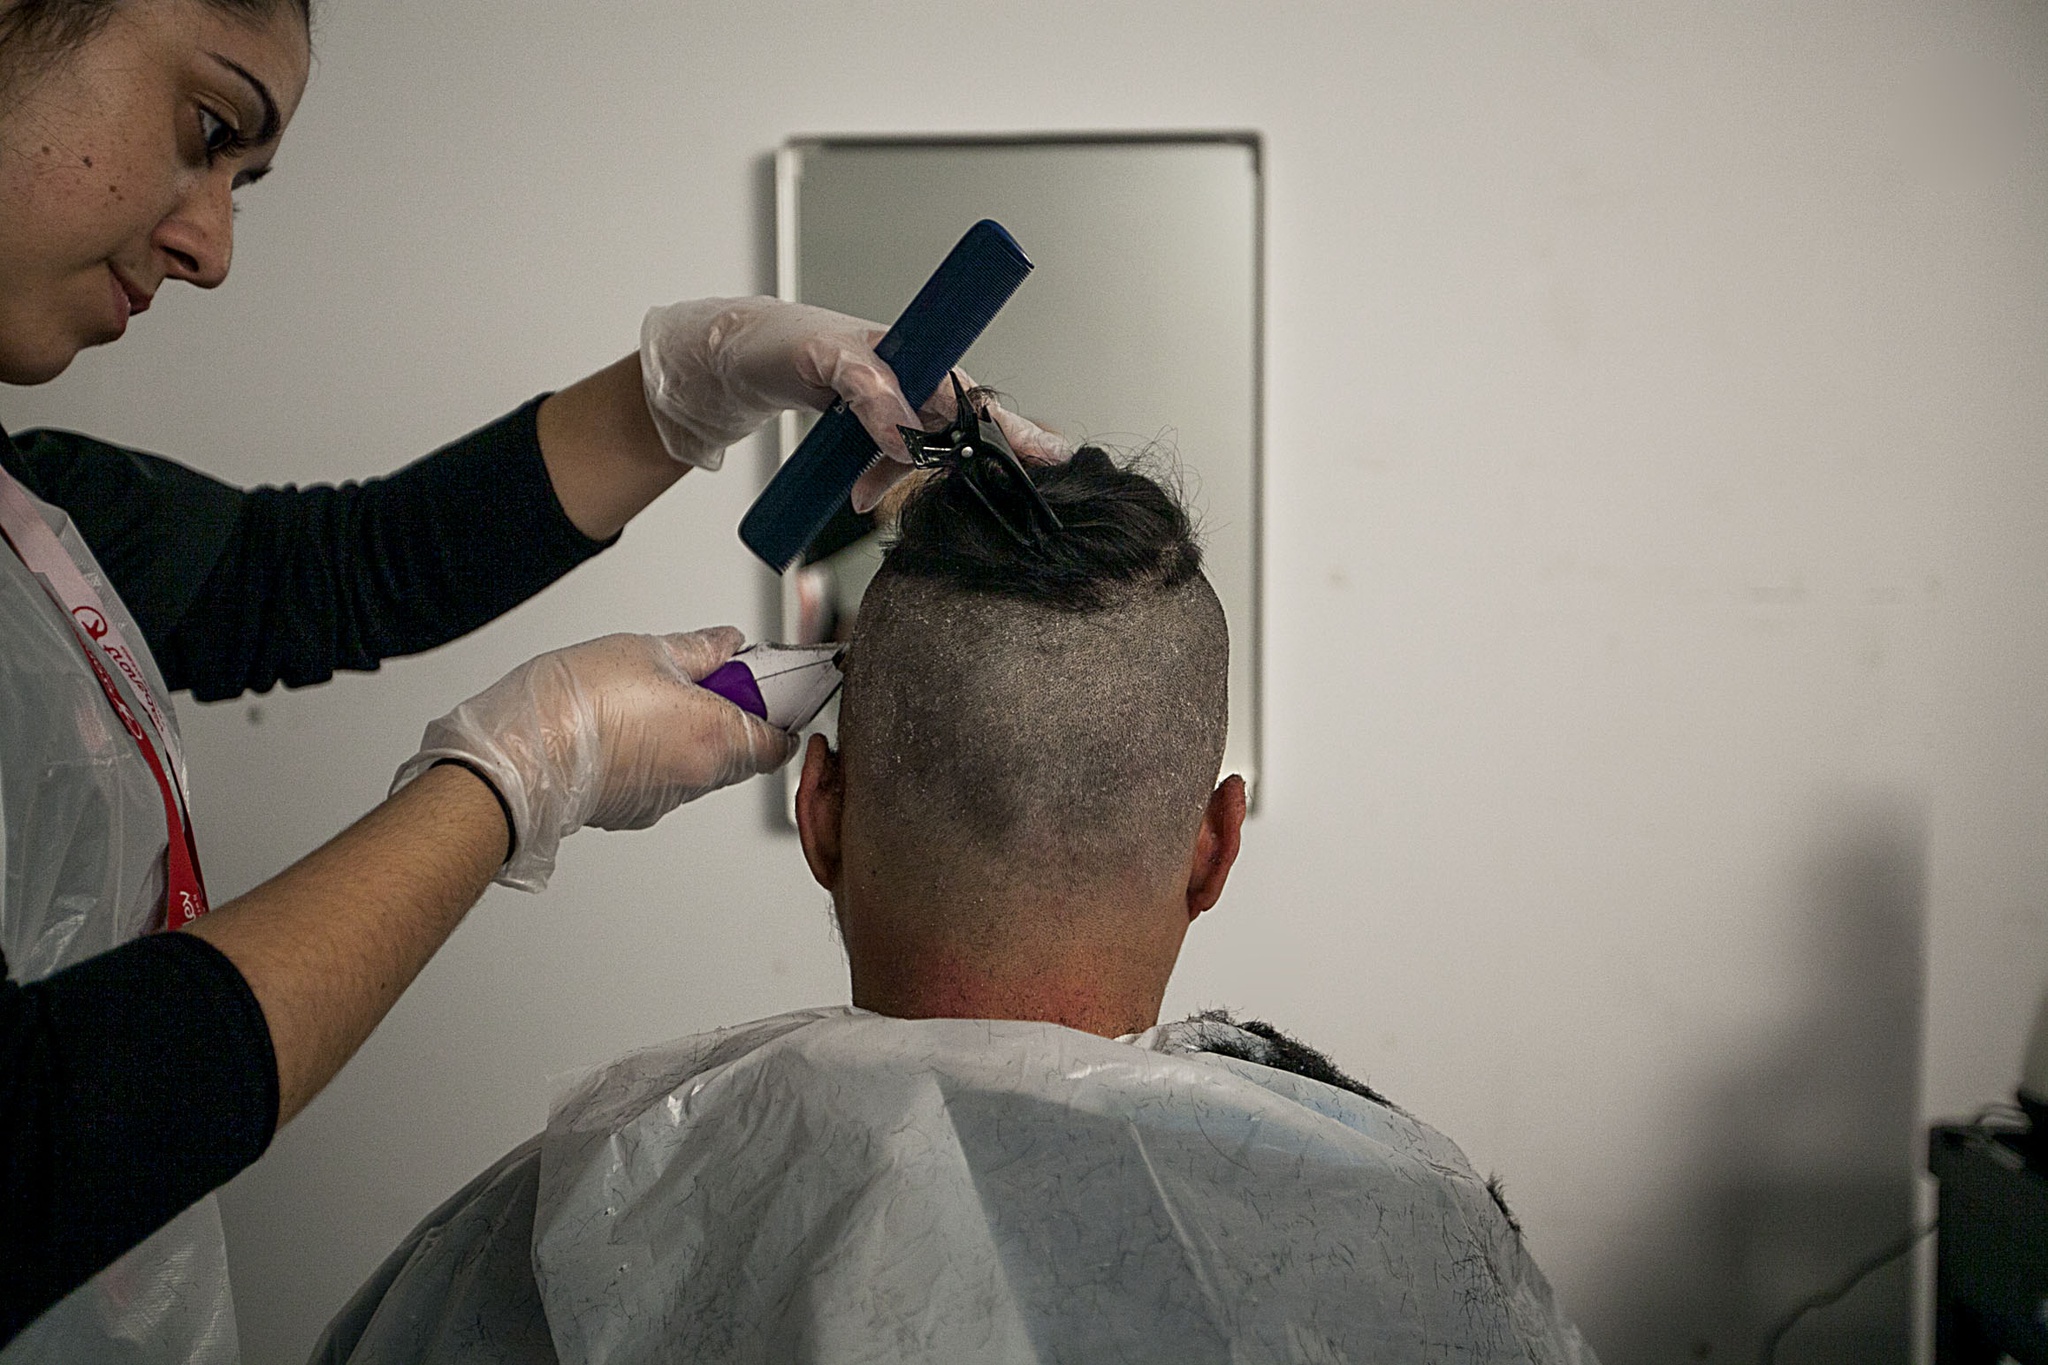 Abrir um cabeleireiro em Portugal, é fácil !! - ContaOnline